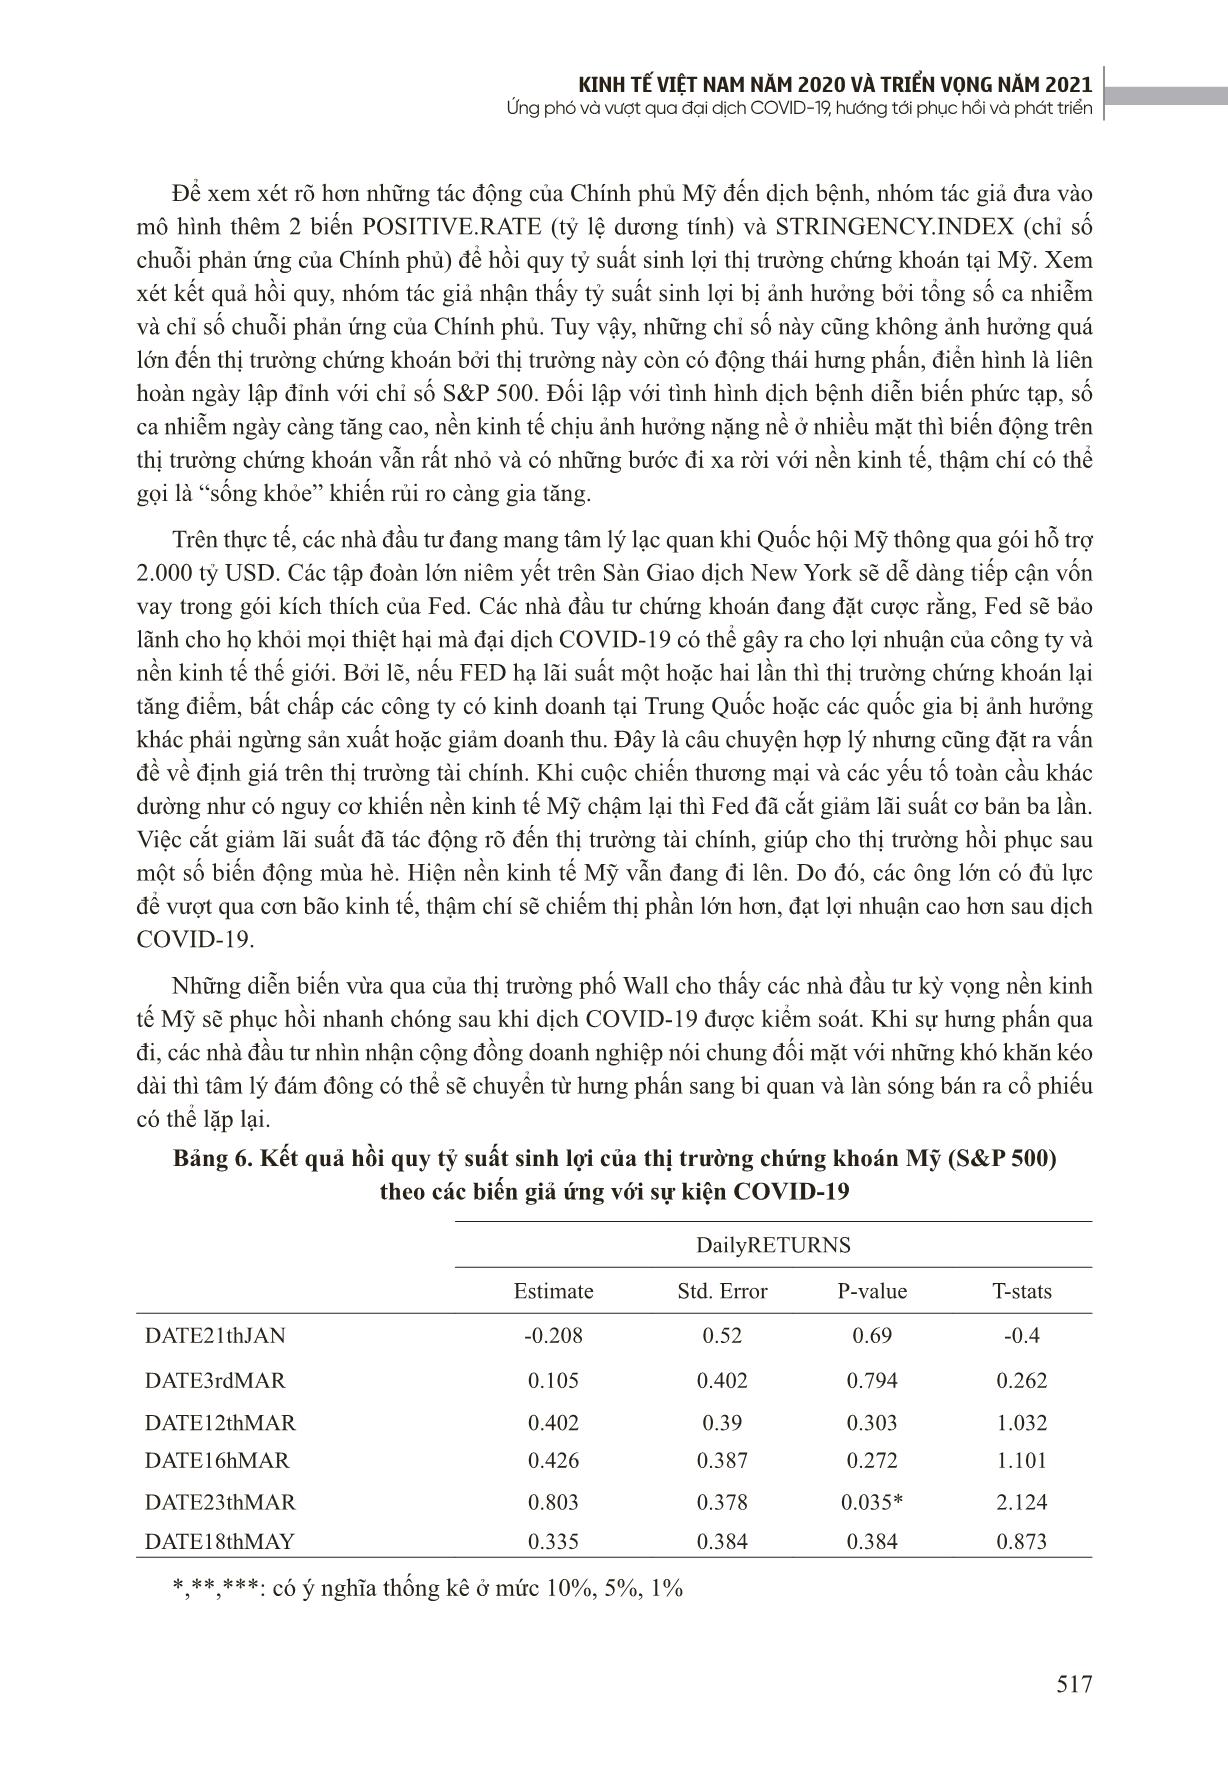 Khảo sát sự tác động của đại dịch Covid-19 đến thị trường chứng khoán Việt Nam trang 9